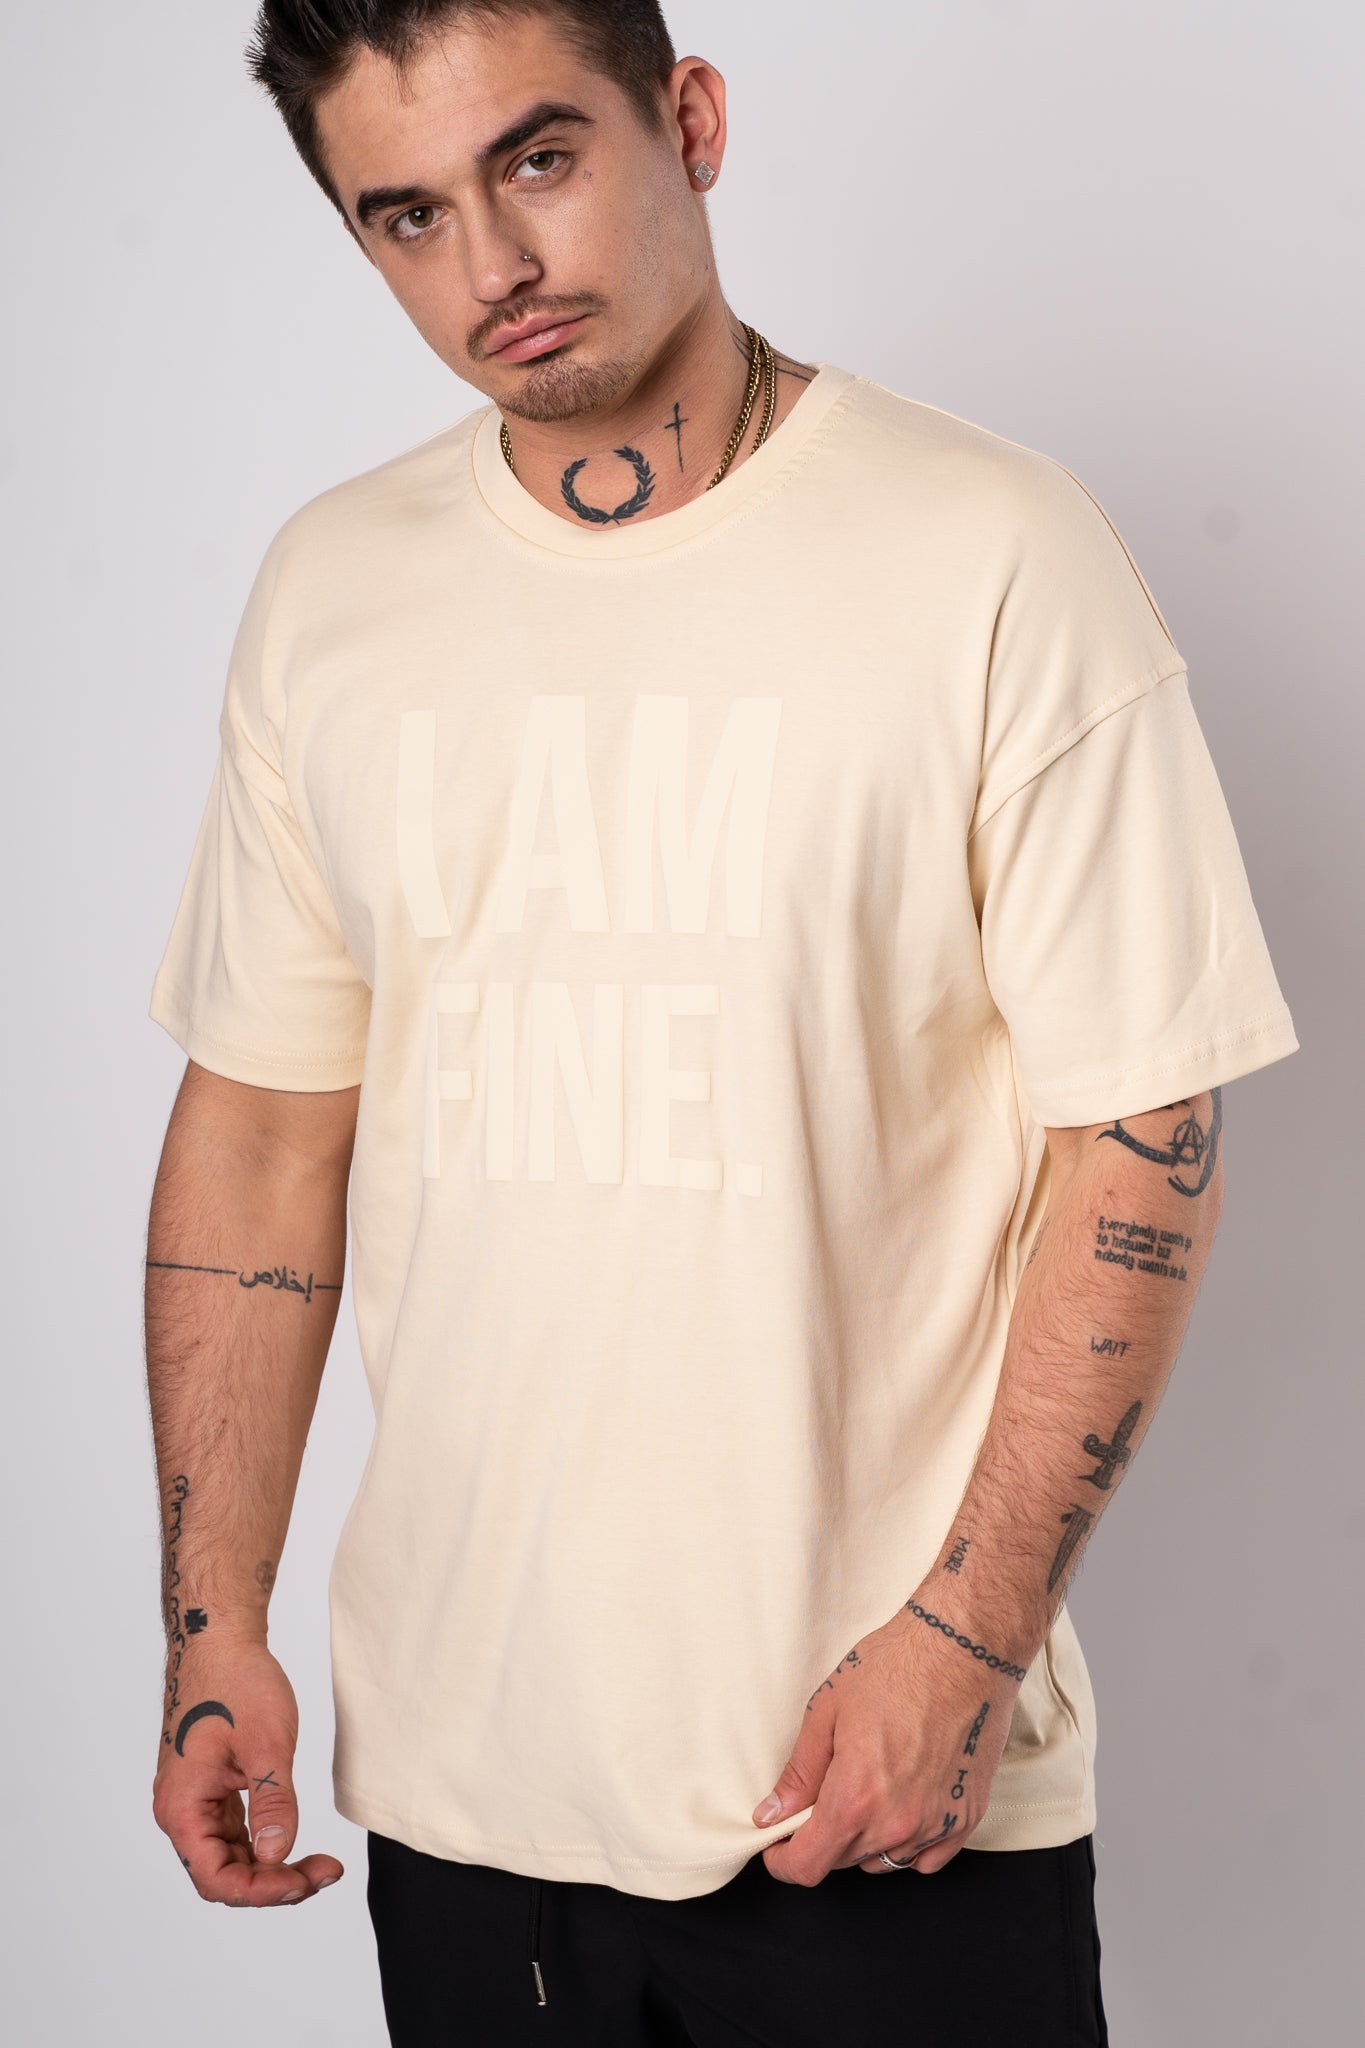 Koszulka Oversize "I am Fine" - Musztardowy